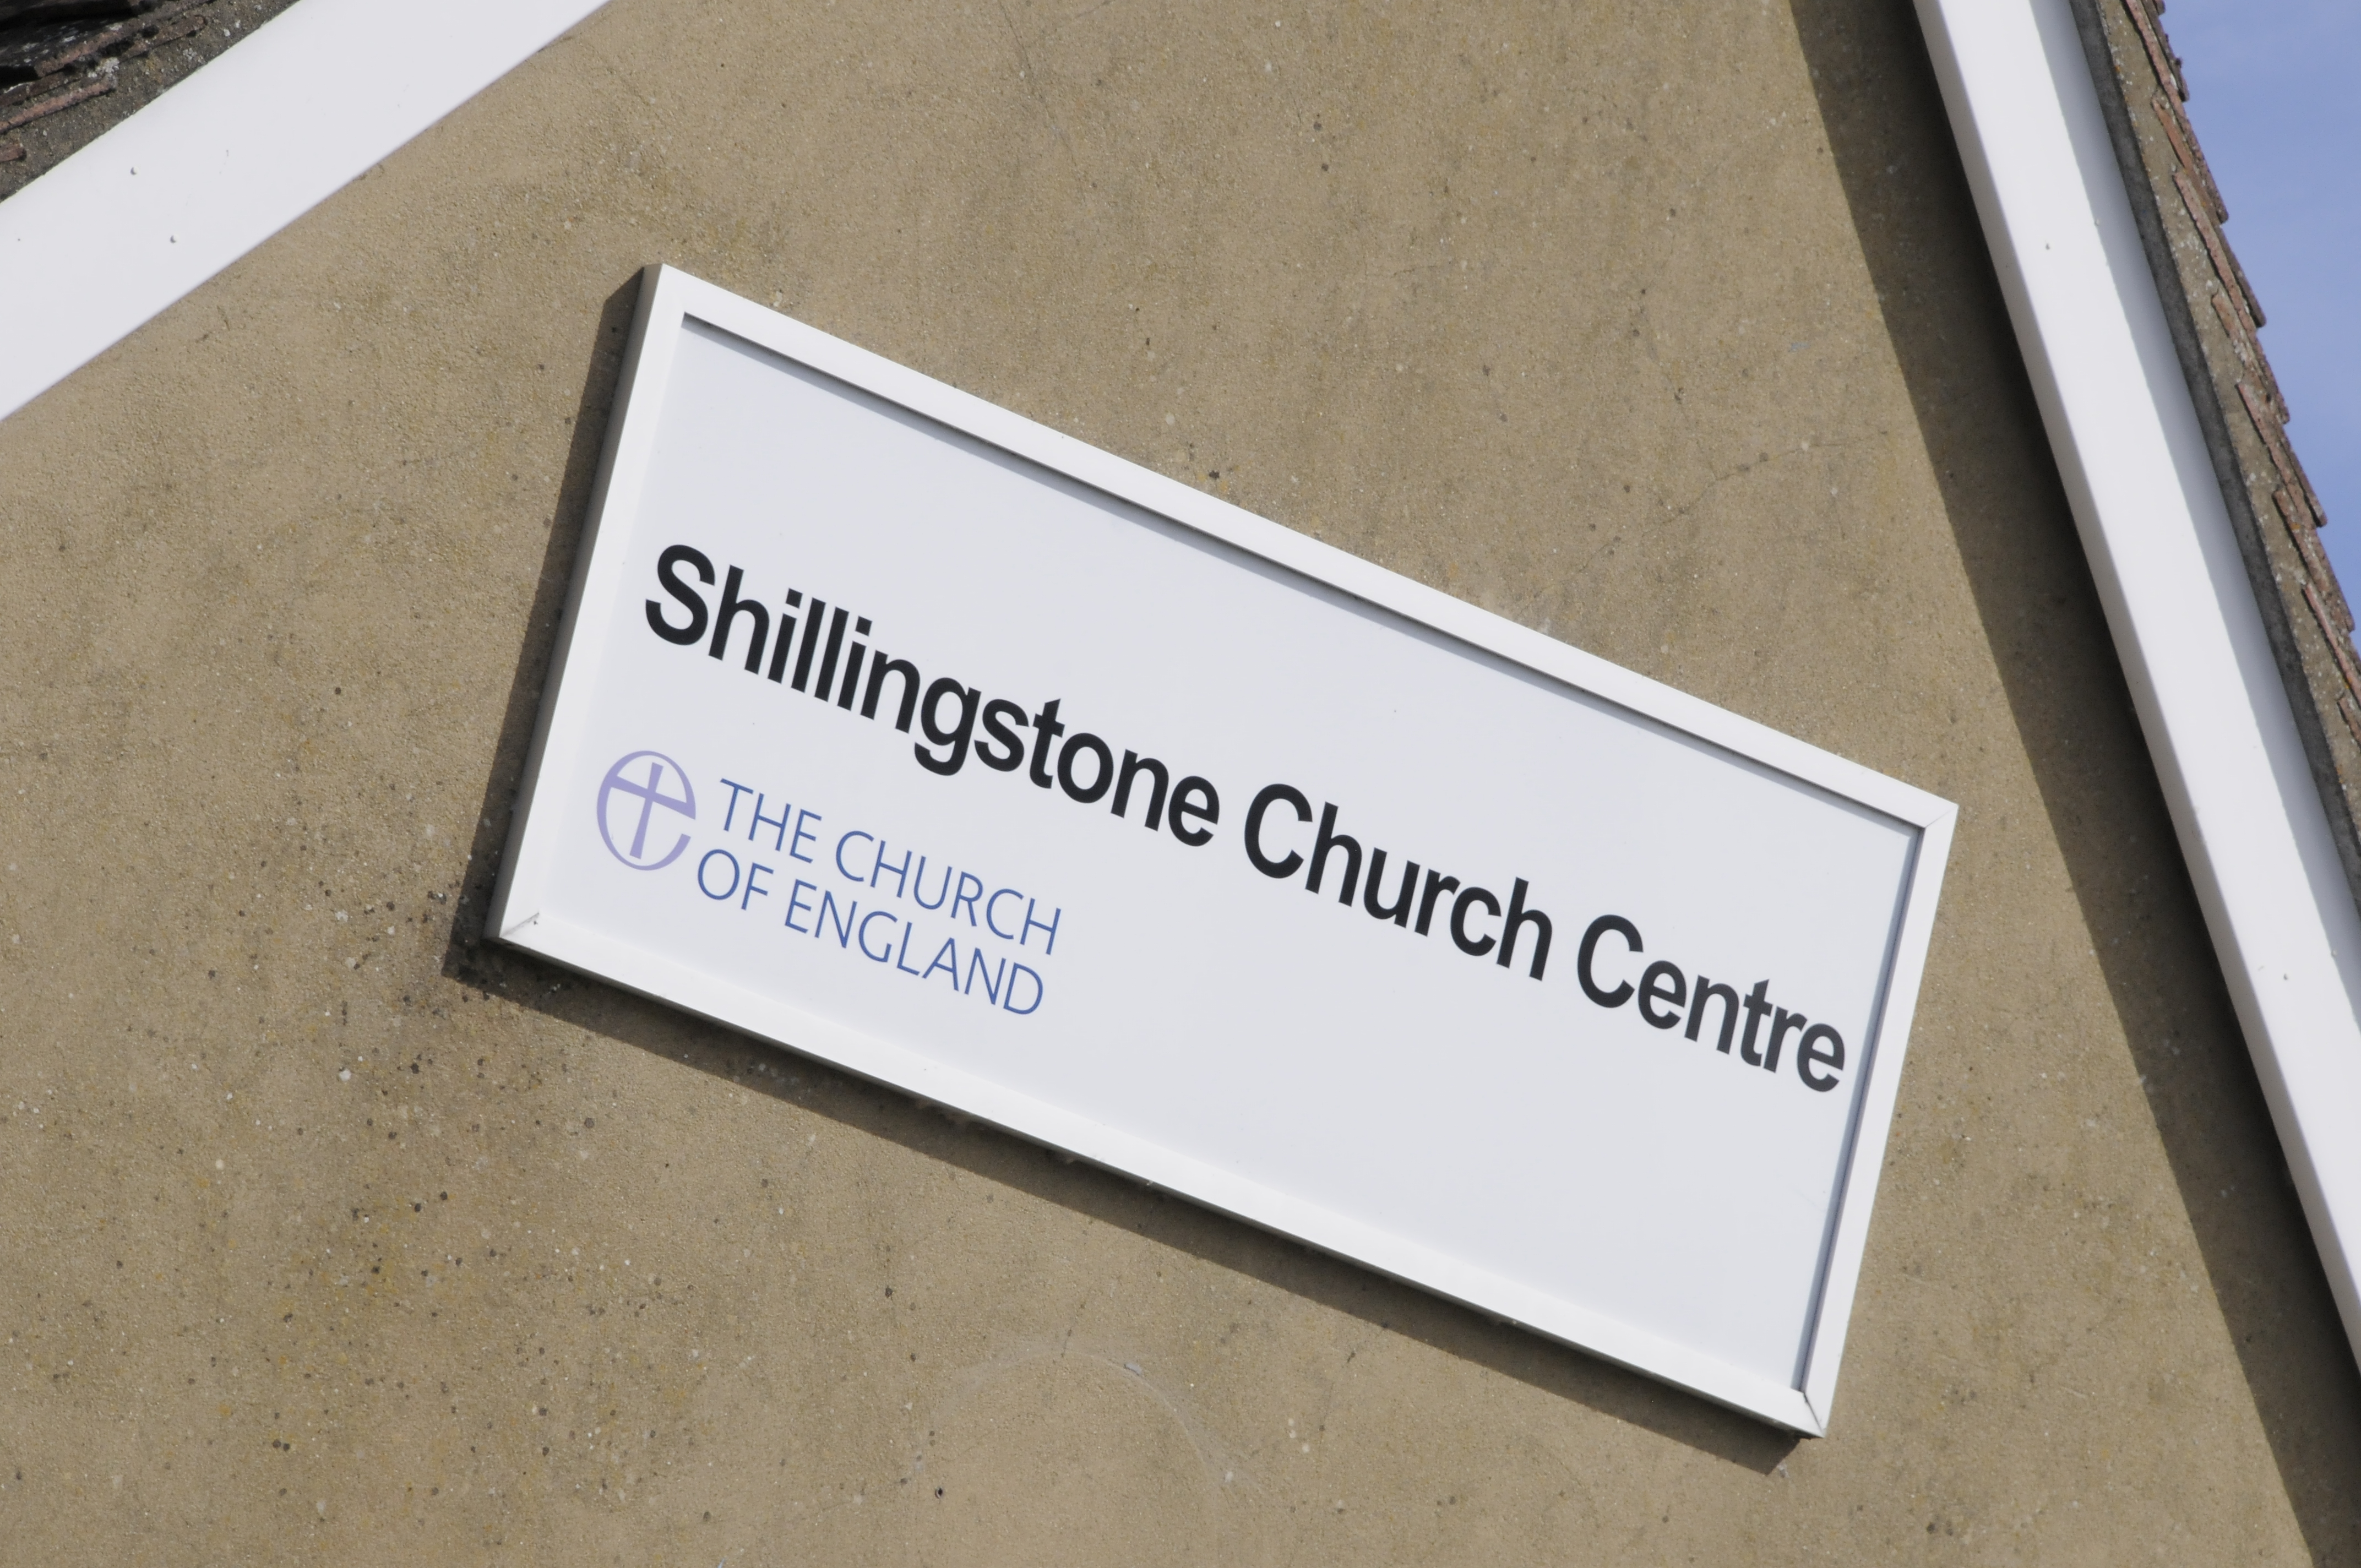 Shillingstone Church Centre (SCC)